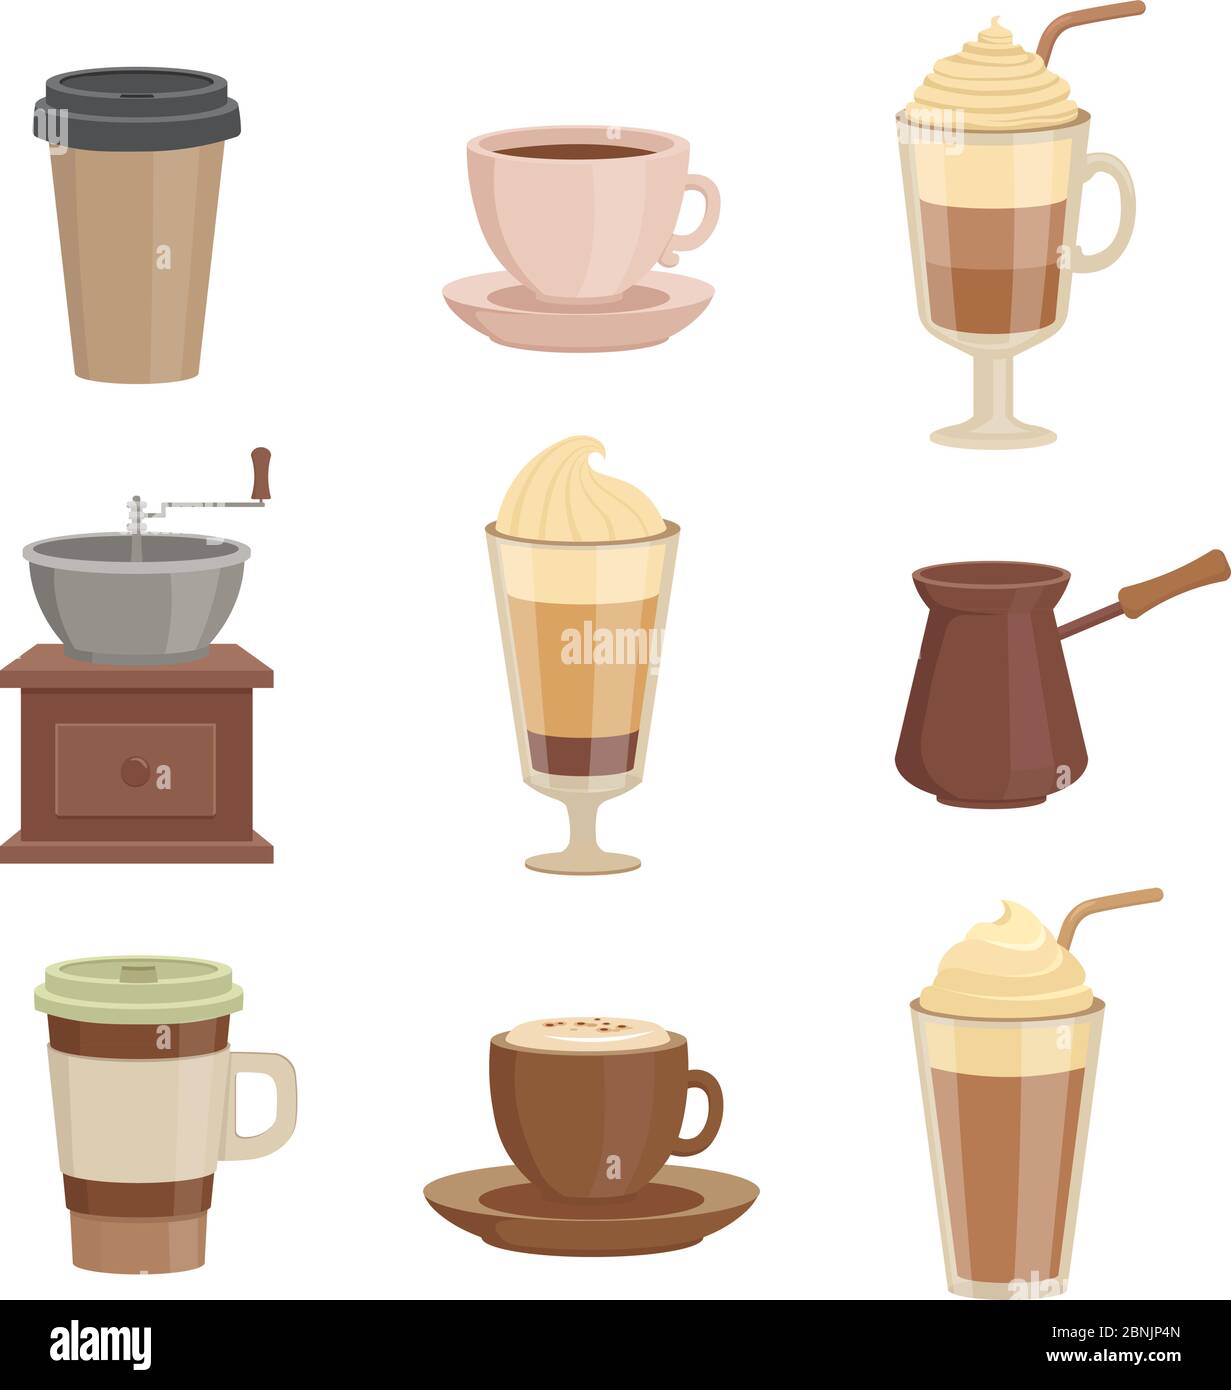 Juego de tazas de café d representación de un juego de tazas de café en  diferentes tamaños y diseños listos para